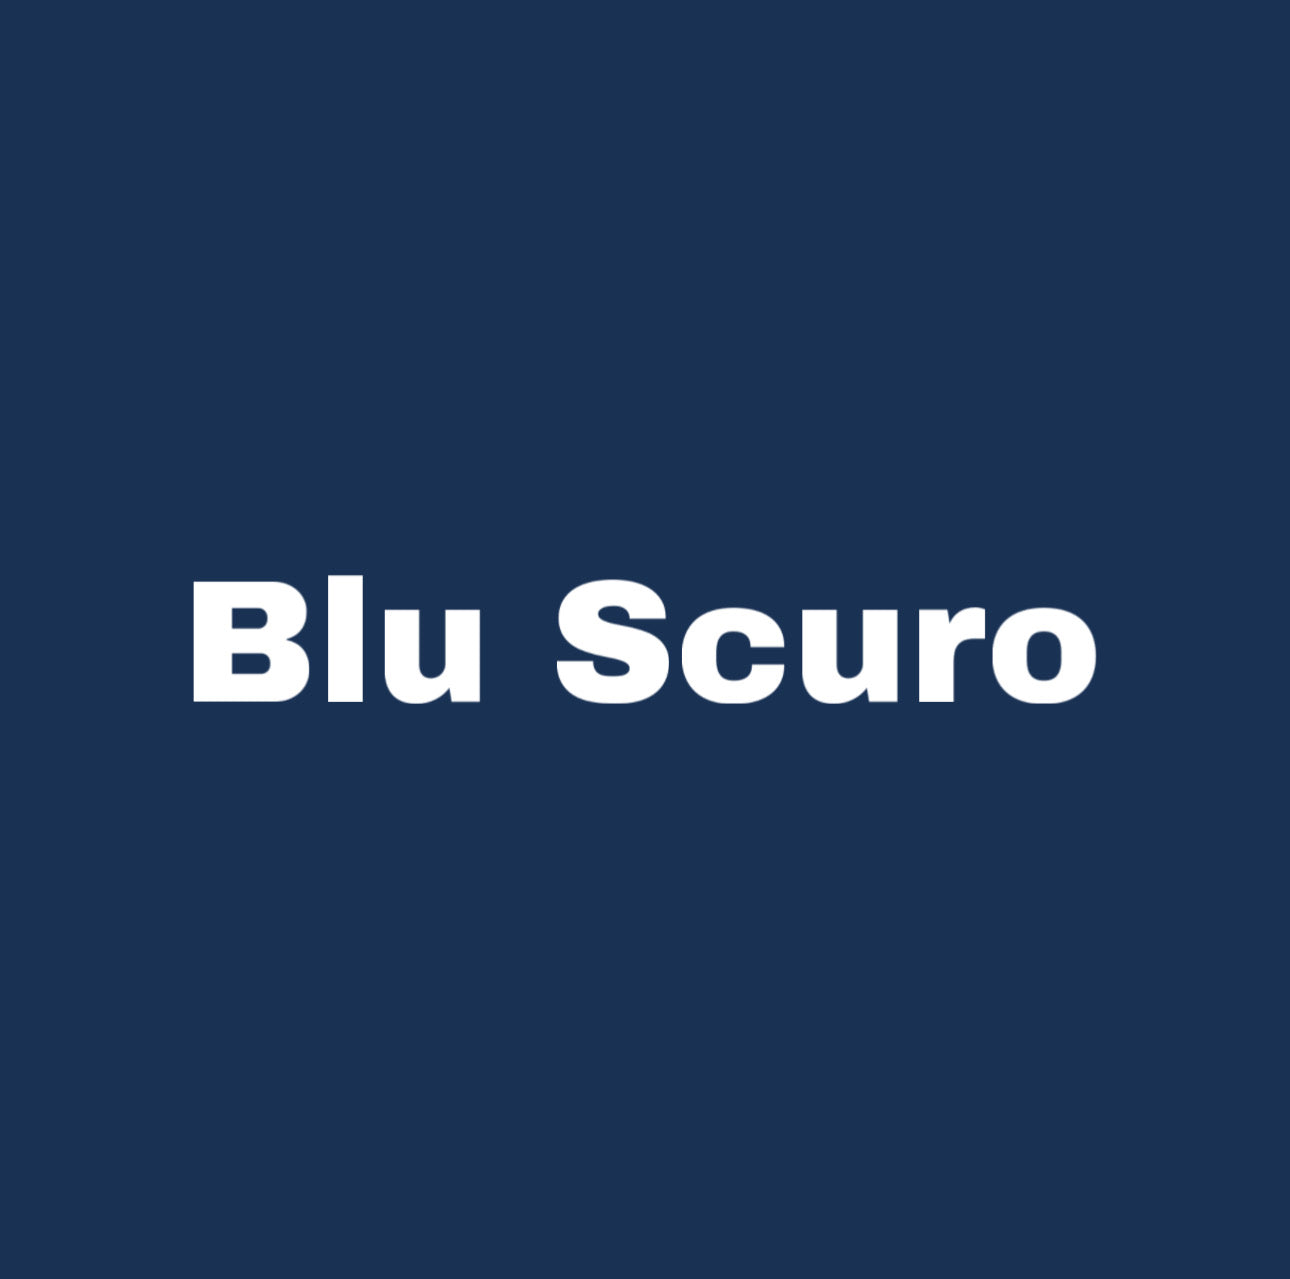 bluscuro-happycolor